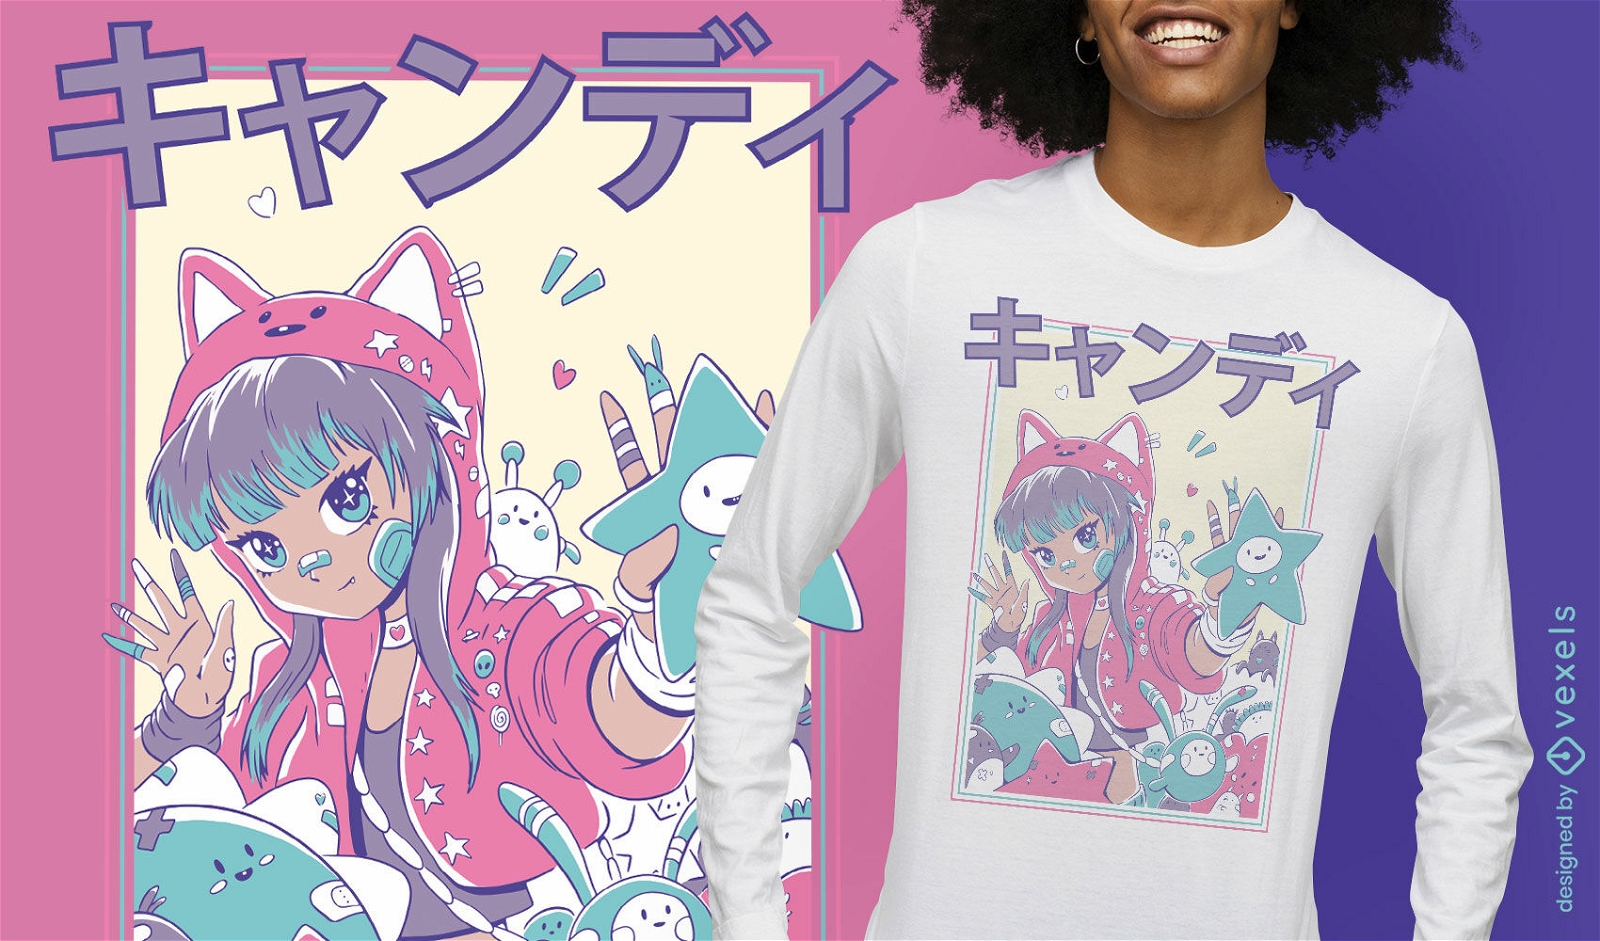 Nettes Anime-M?dchen mit Hoodie-T-Shirt-Design